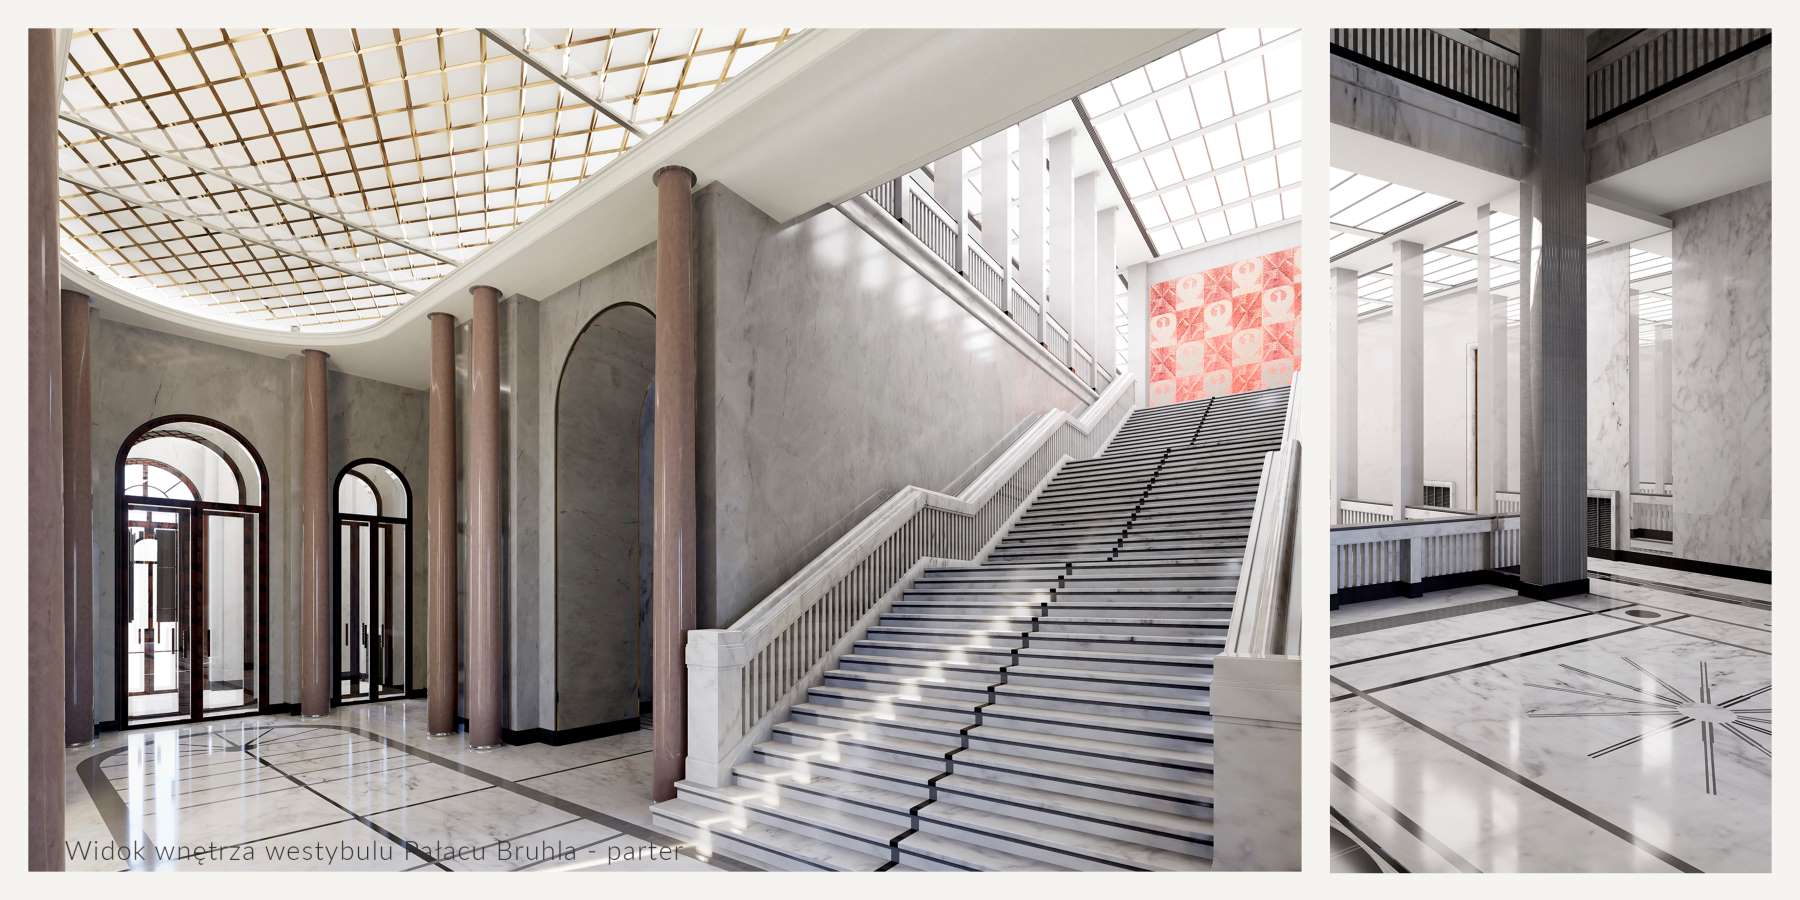 Wnętrze westybulu Pałacu Brühla. Wykonanie z materiałów kamiennych o wysokim połysku. Na szczycie schodów, na ścianie materiał nawiązujący stylistyką do produktów Spółdzielni Artystów "Ład".